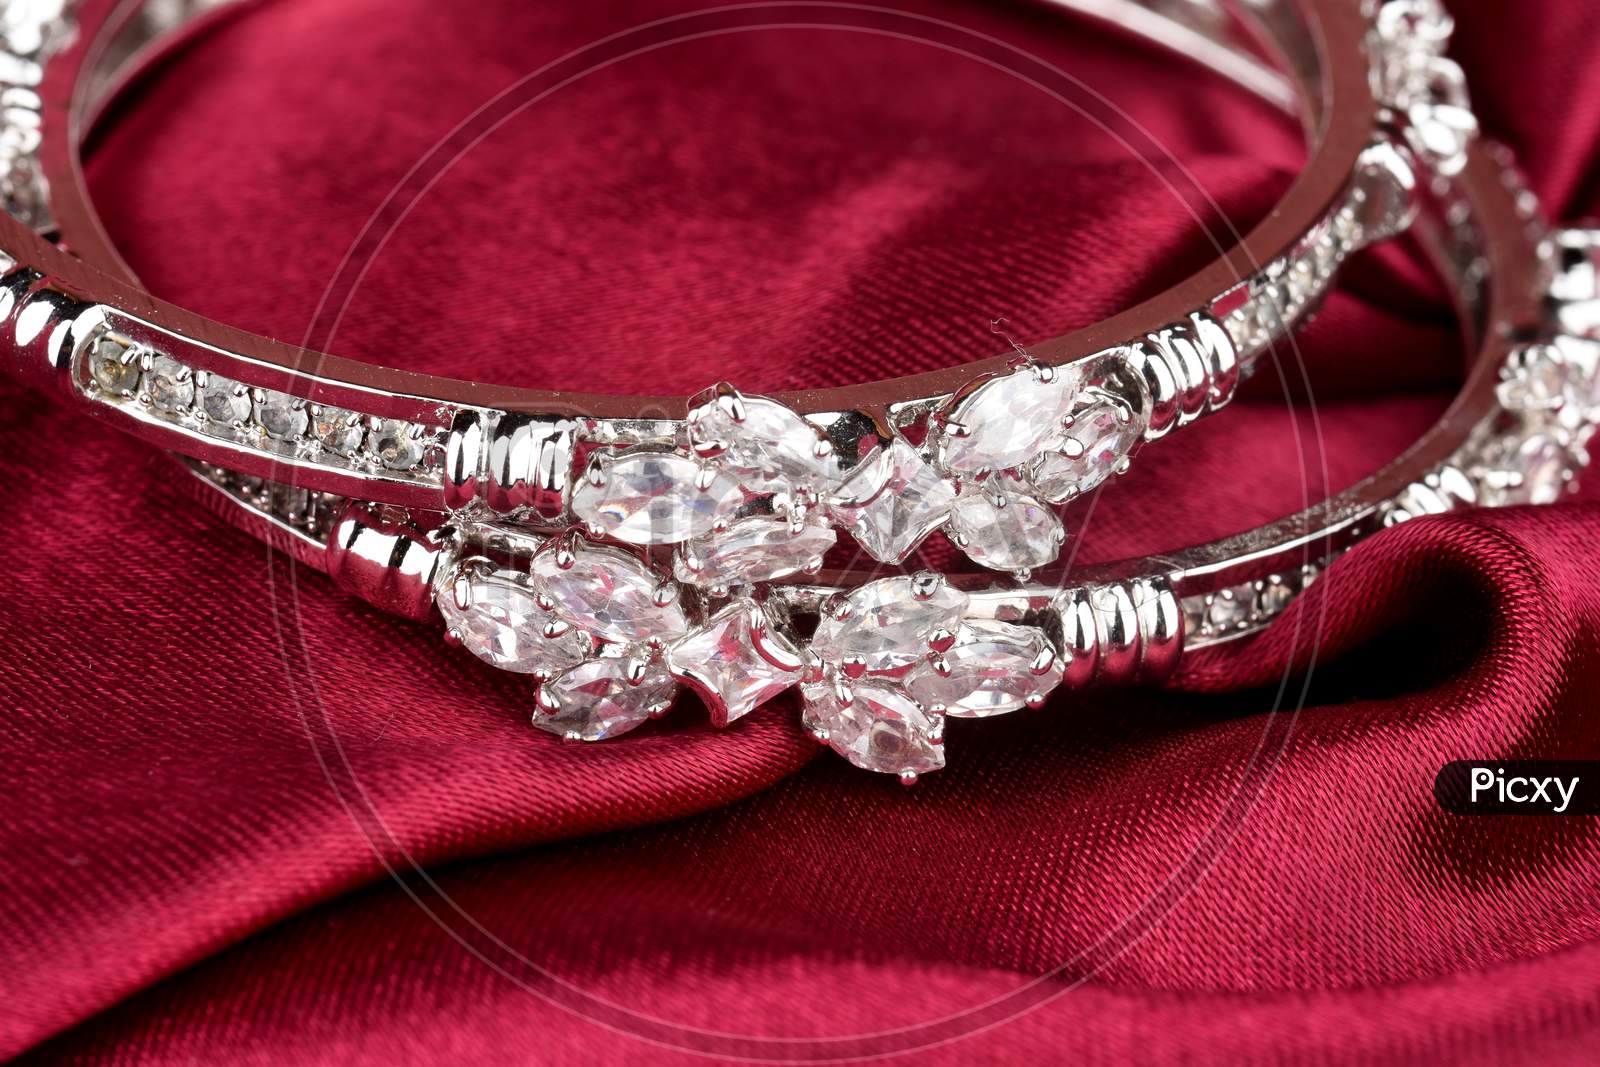 Diamond Bracelet On Cloth, Diamond Jewellery, Diamond Bangles,Diamond Jewelry